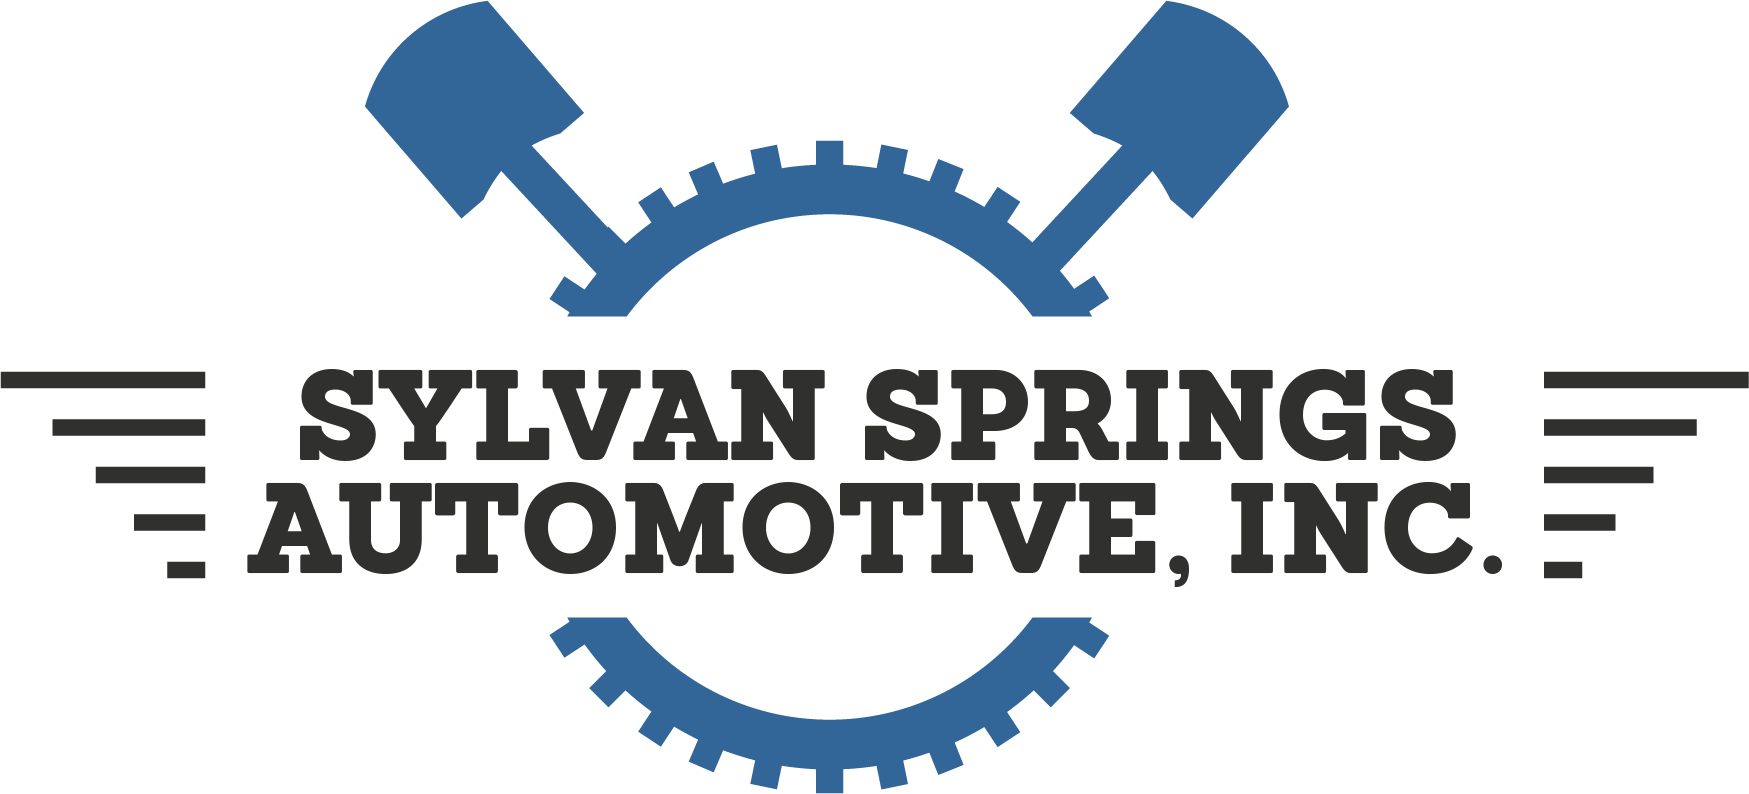 Sylvan Springs Automotive, Inc.